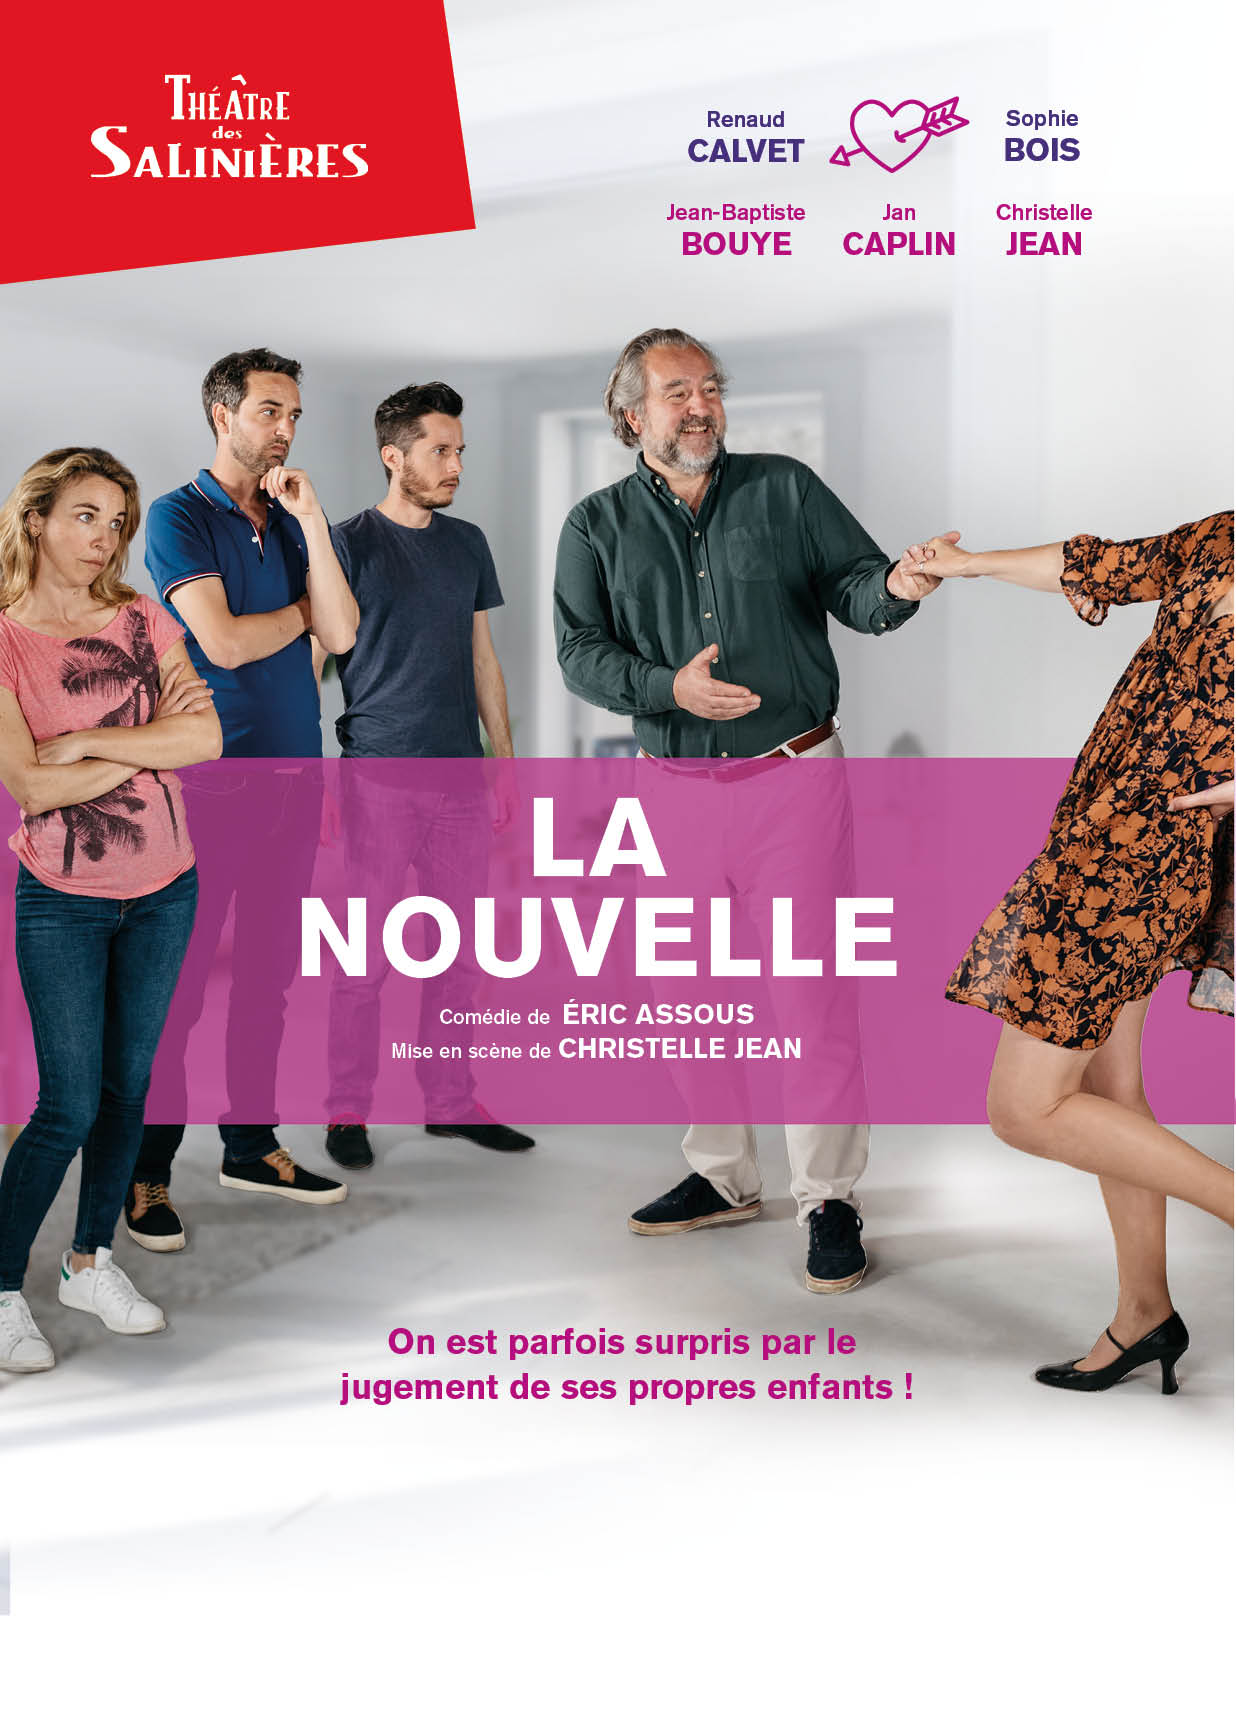 https://the-place-to-be.fr/wp-content/uploads/2020/09/la-nouvelle-theatre-salinieres-bordeaux-2020.jpg